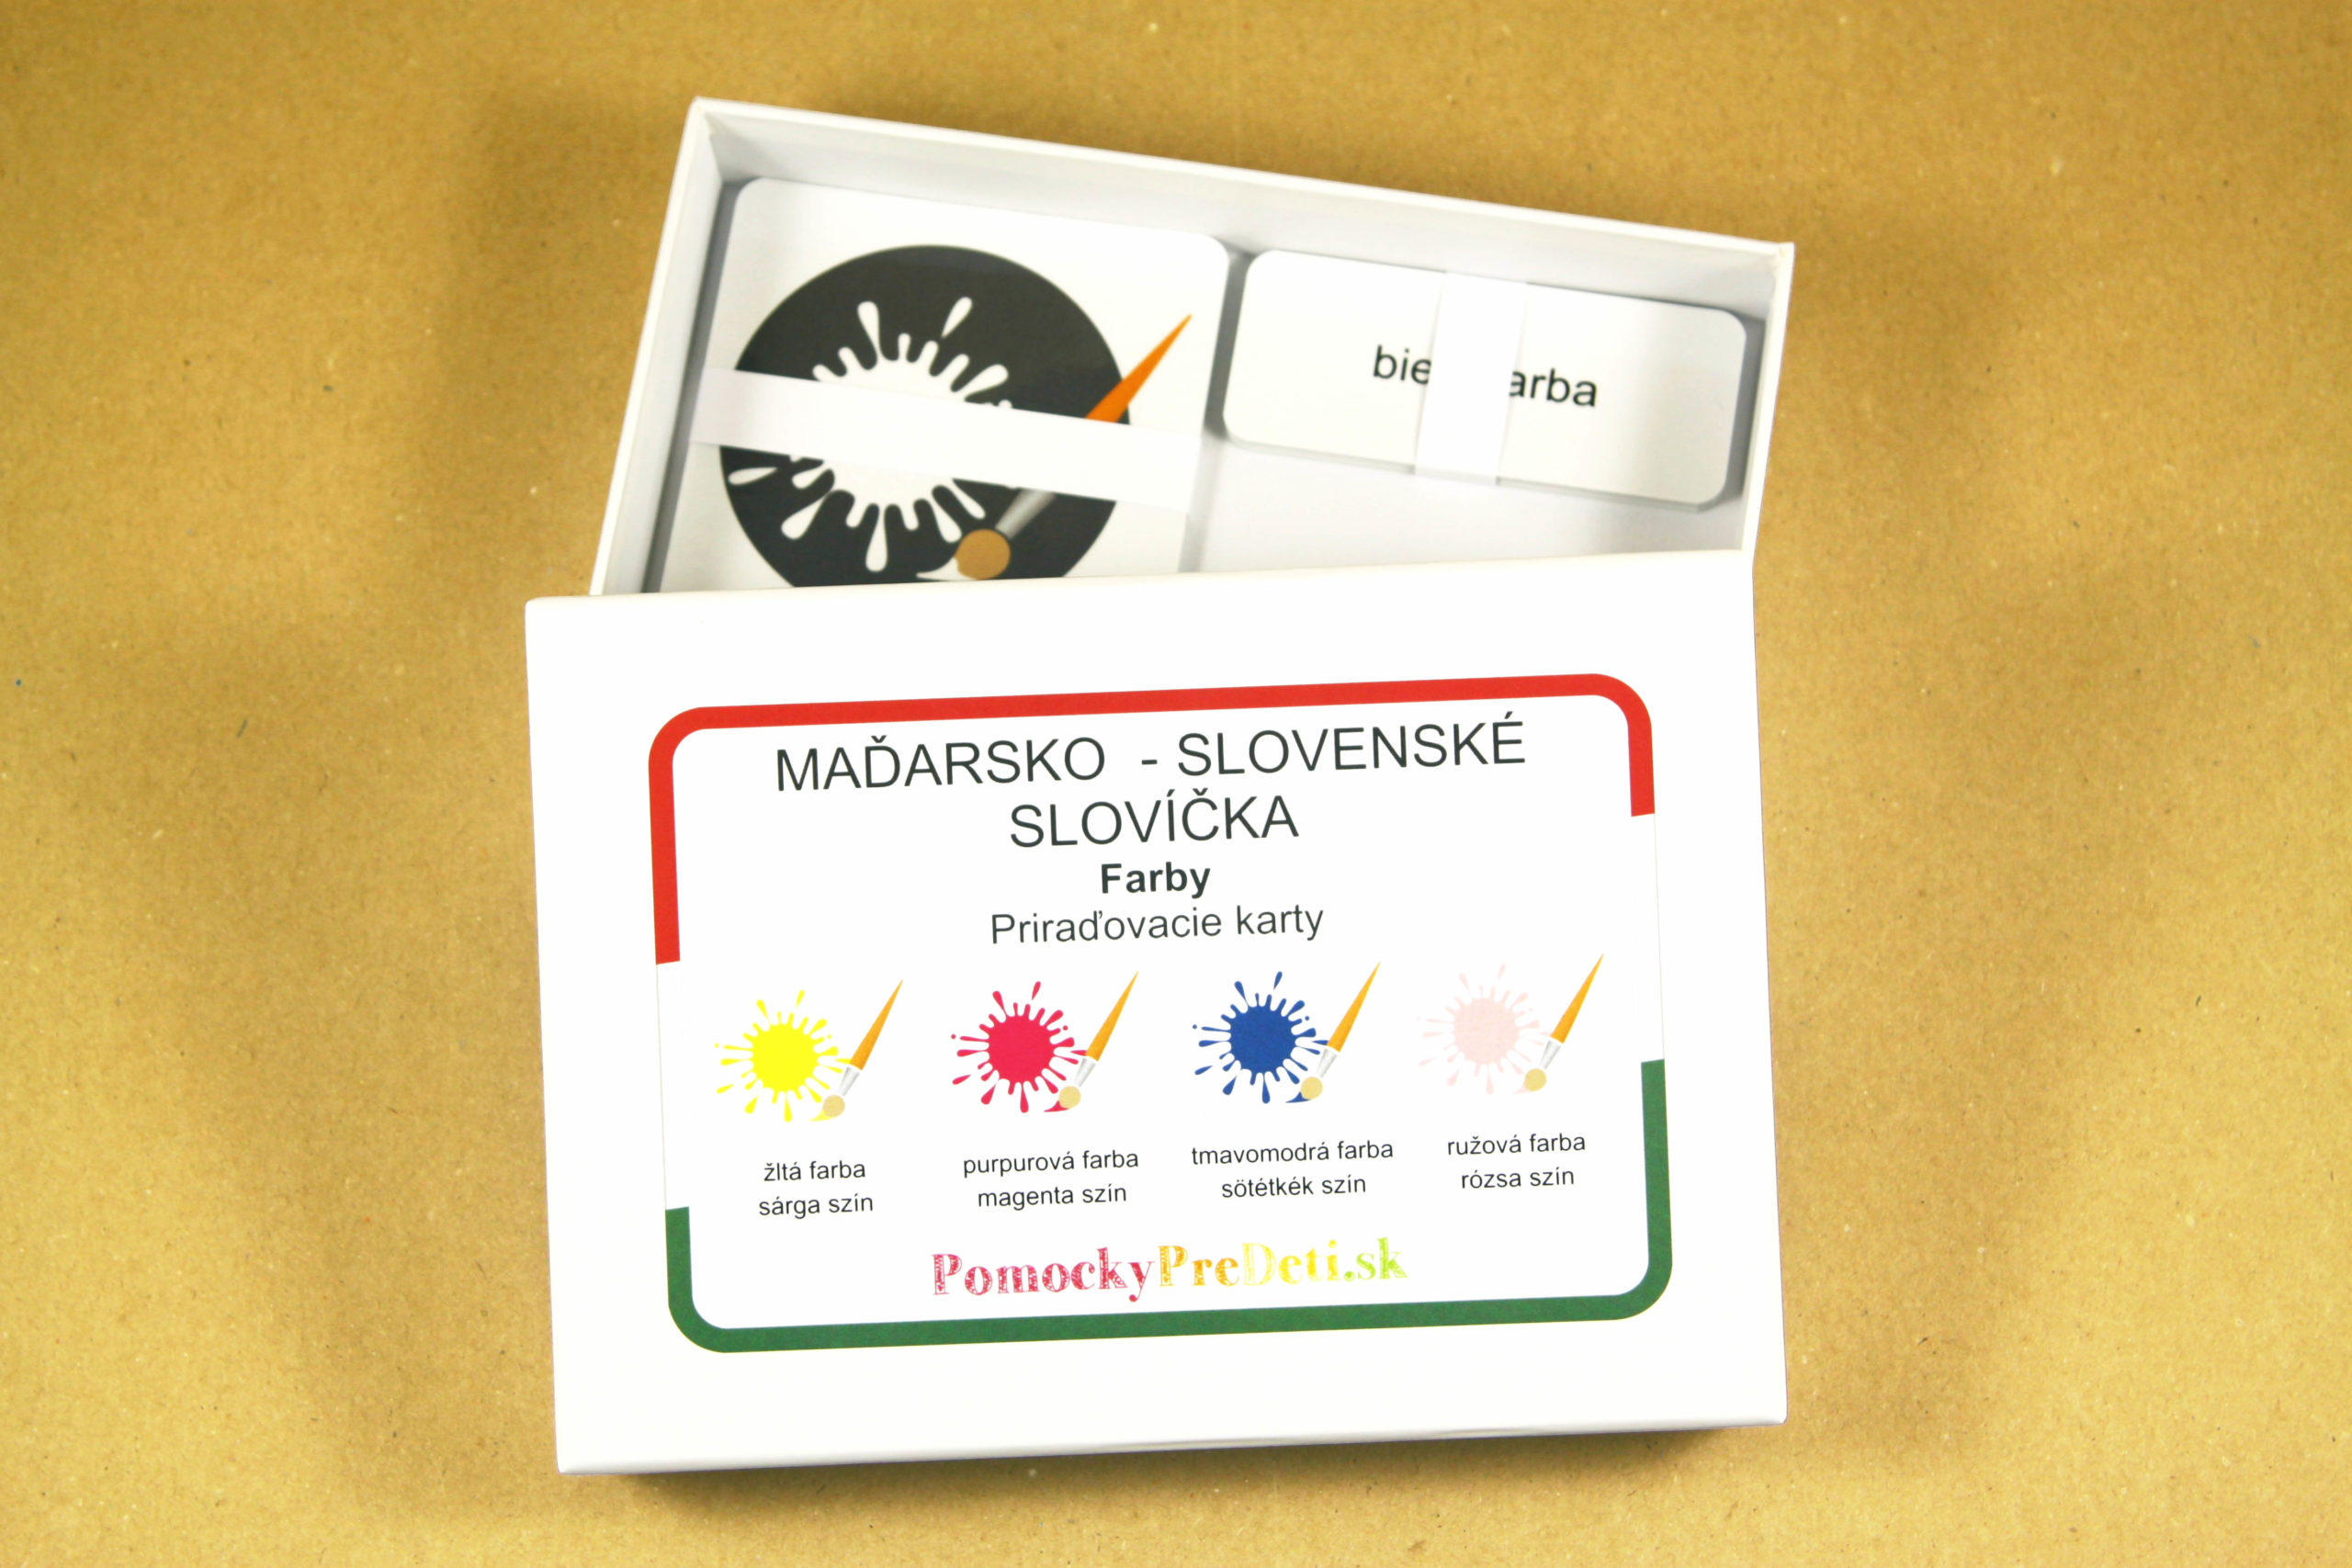 Maďarsko-slovenské slovíčka - Farby | Priraďovacie karty (30ks)